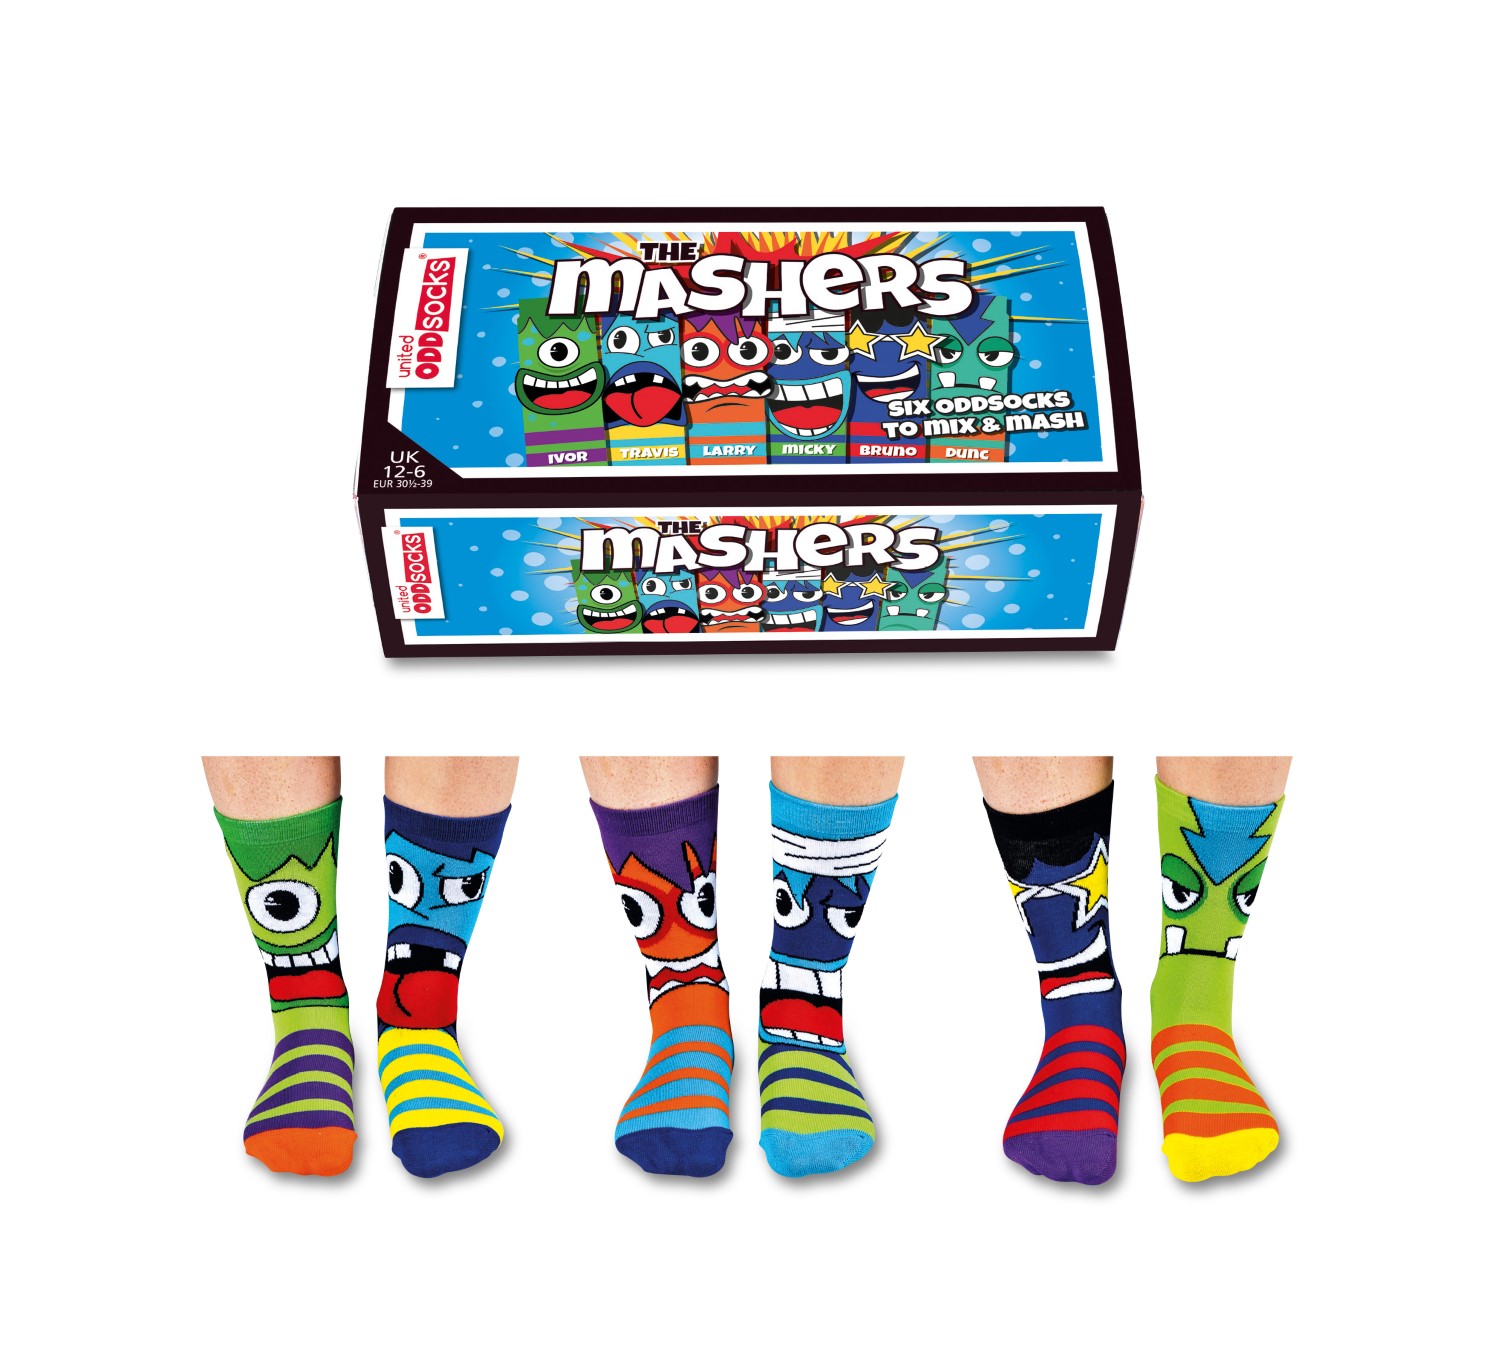 United Oddsocks The Mashers Boy's Socks Size 6-12 UK (Set of 3 Pairs)